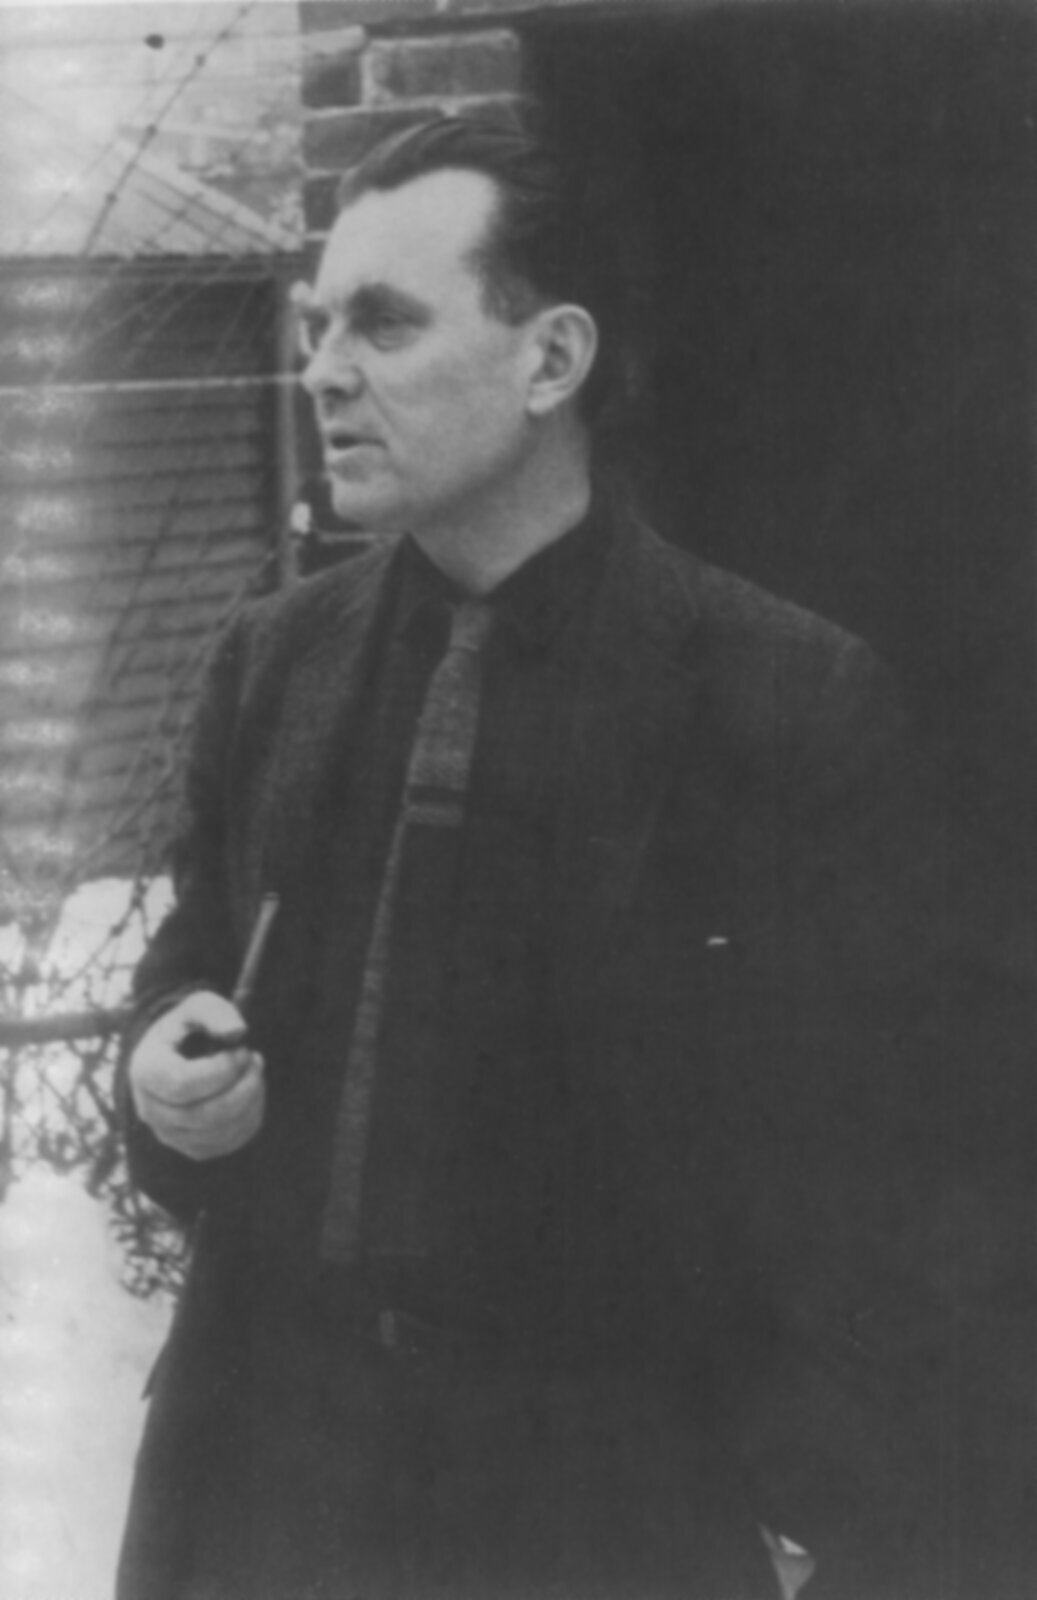 Zdjęcie przedstawia mężczyznę w średnim wieku. Mężczyzna stoi, trzyma w prawej dłoni fajkę. Jest ubrany w garnitur.